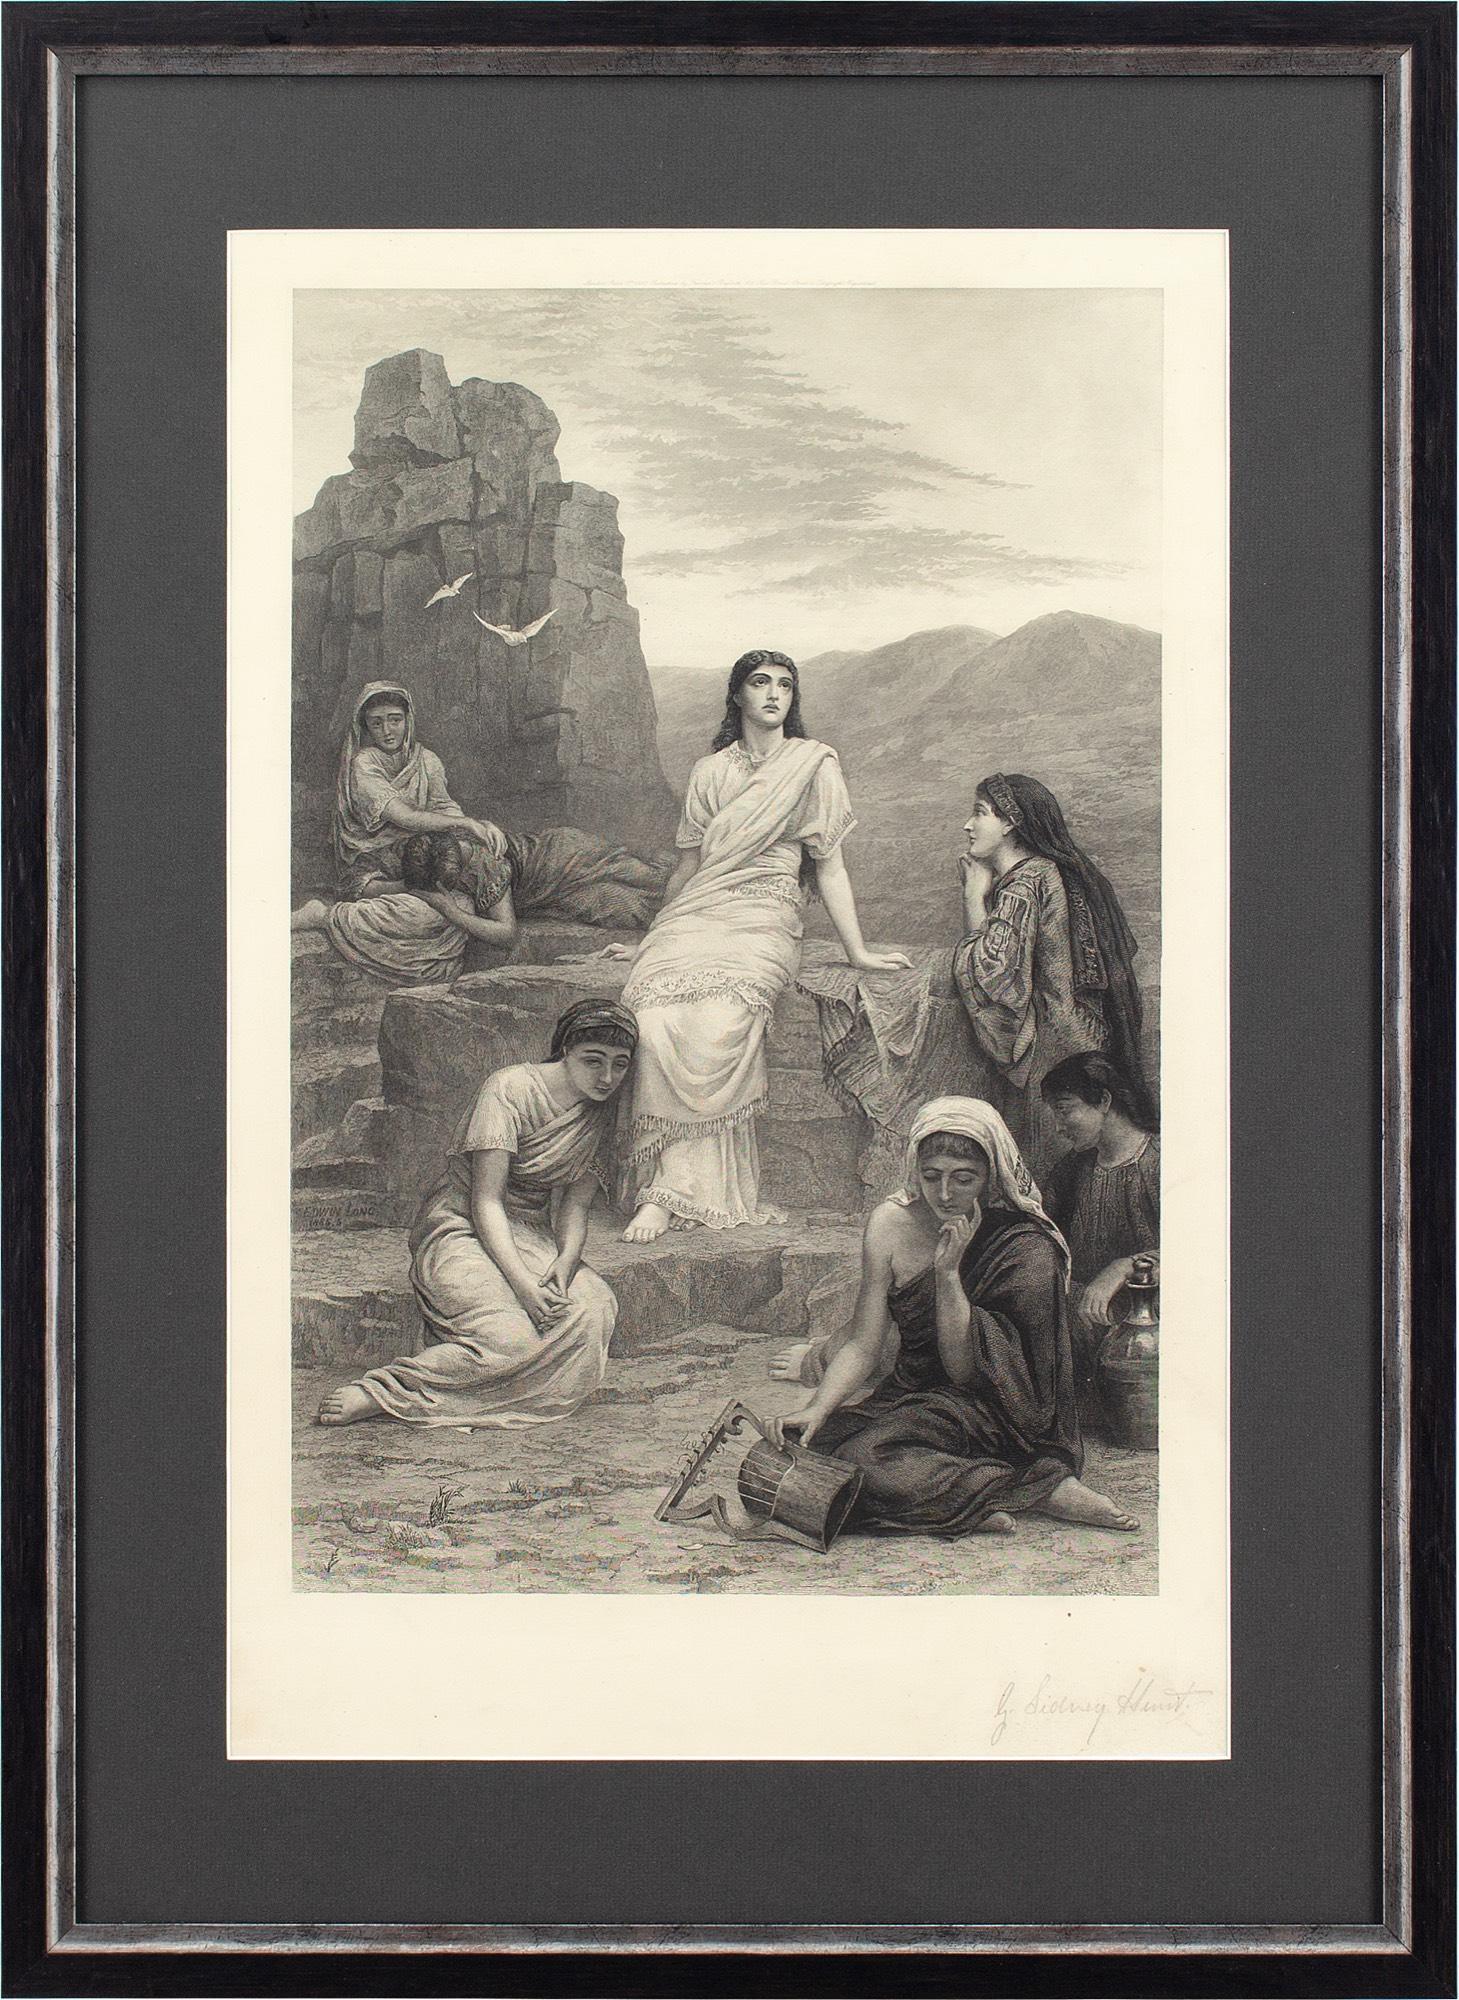 Cette gravure à méthodes mixtes de la fin du XIXe siècle réalisée par George Sidney Hunt (1856-1917) d'après Edwin Long RA (1829-1891) fait partie d'une série de trois gravures représentant l'histoire de Jephté dans l'Ancien Testament. Ici, nous